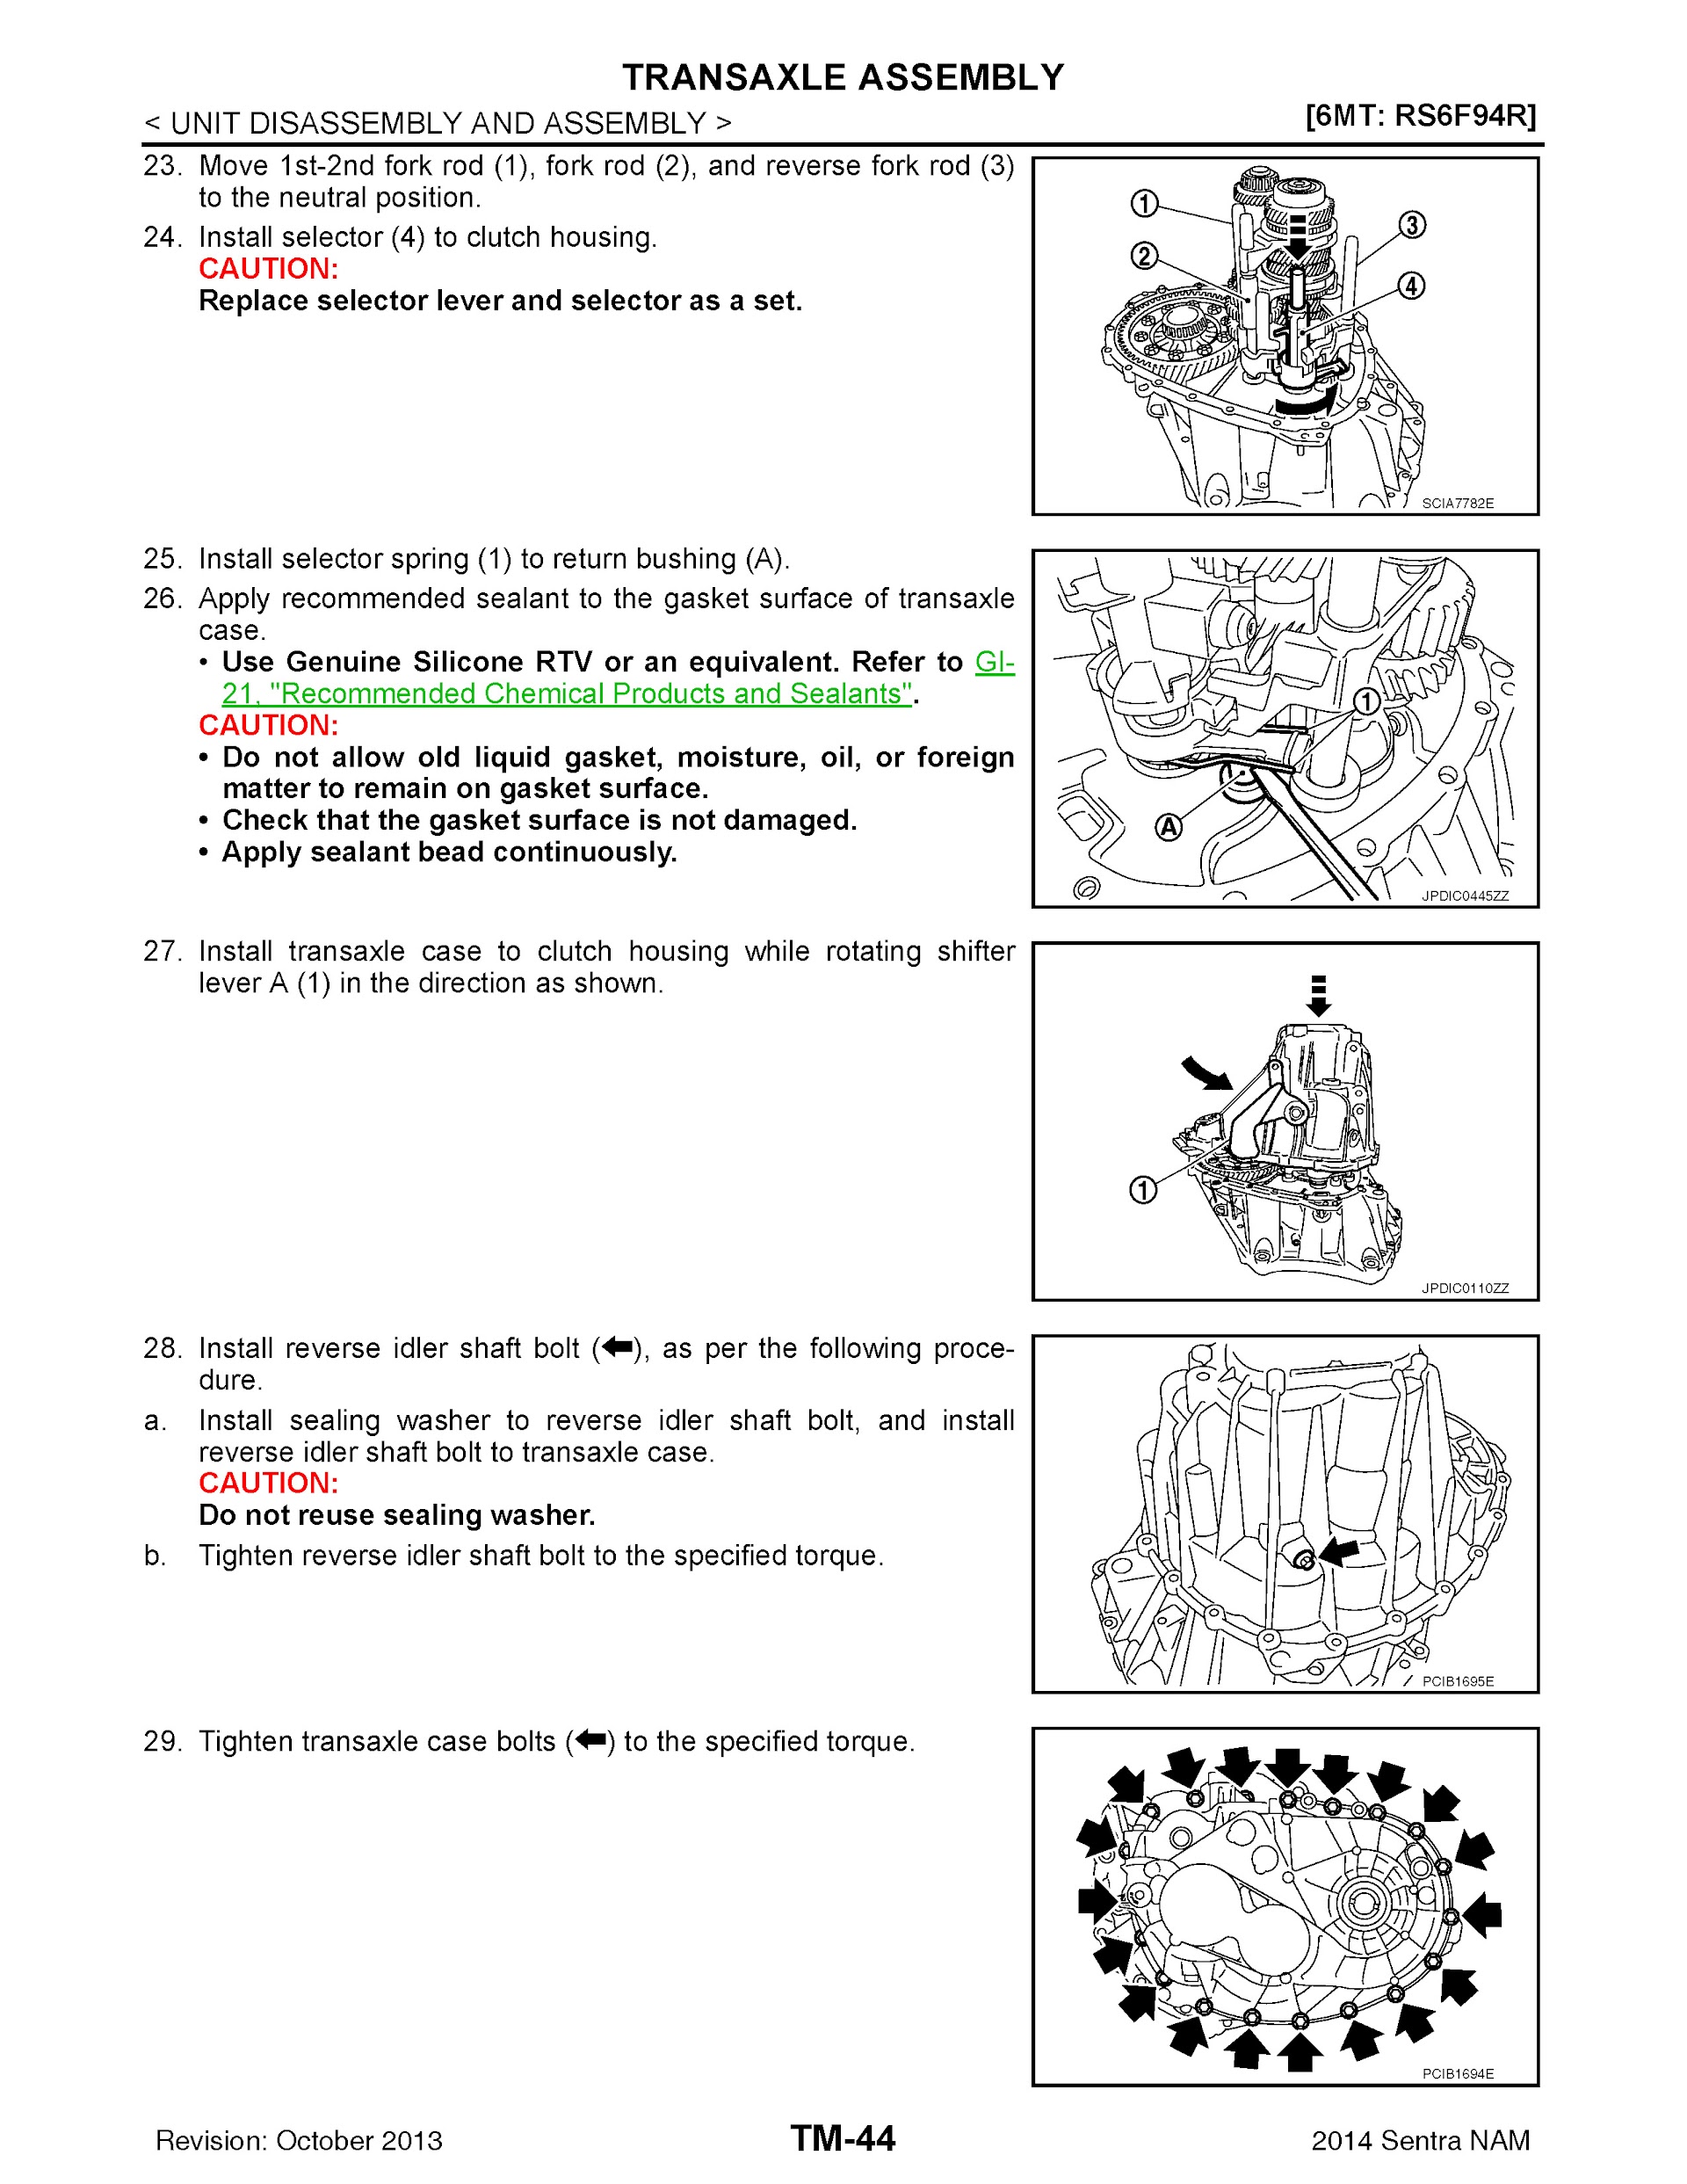 2014 Nissan Sentra Repair Manual, Transaxle Assembly